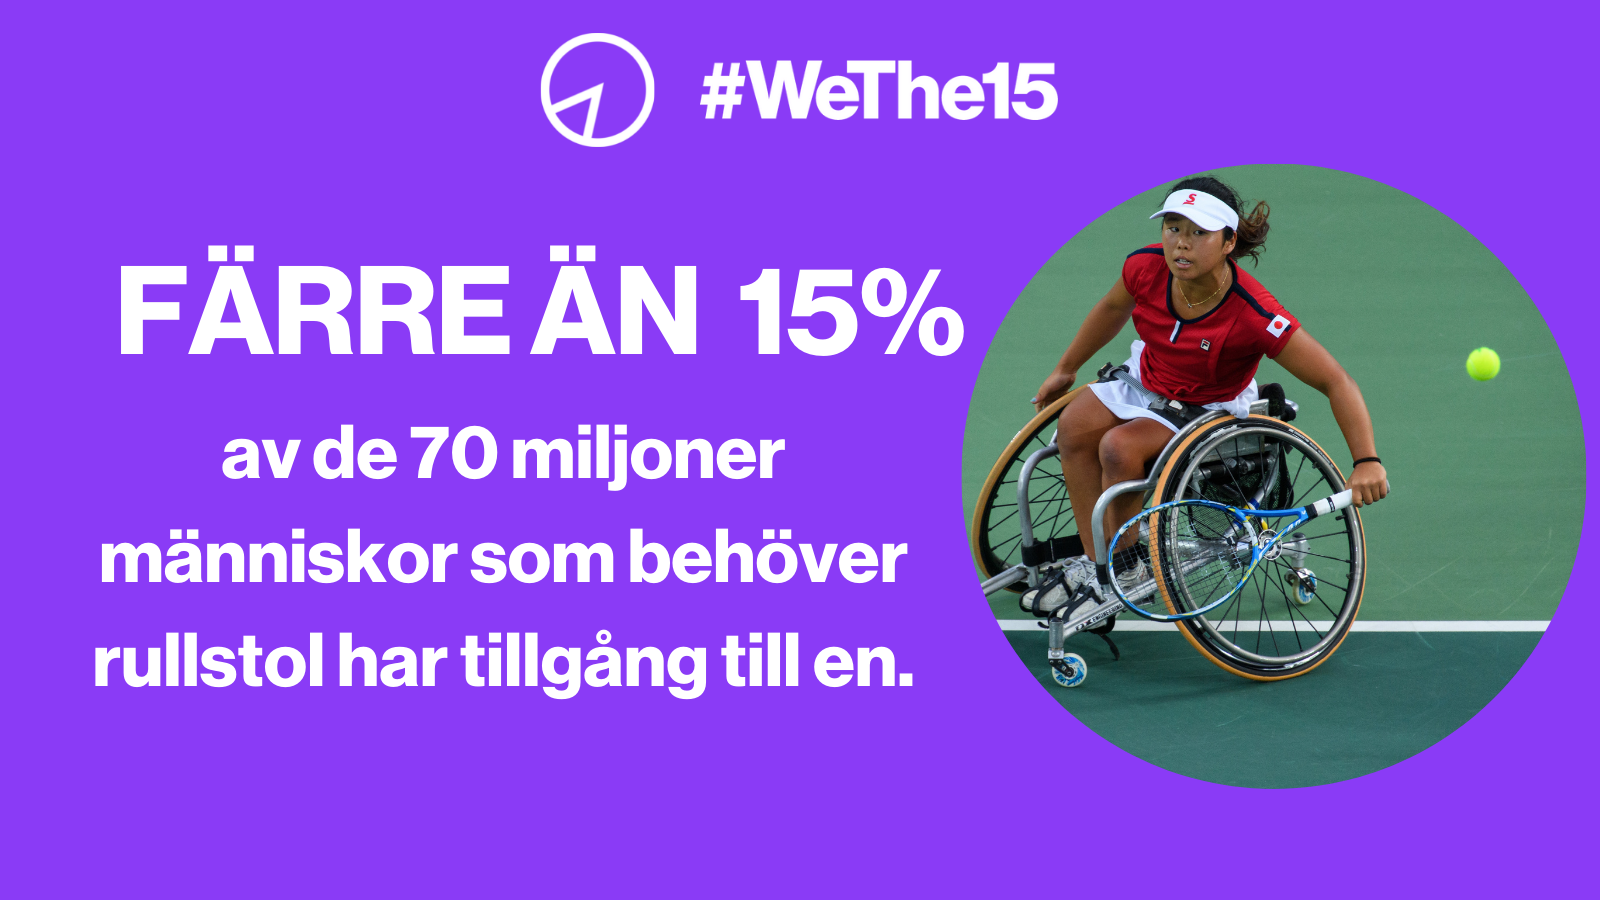 En kvinna i rullstol spelar tennis.